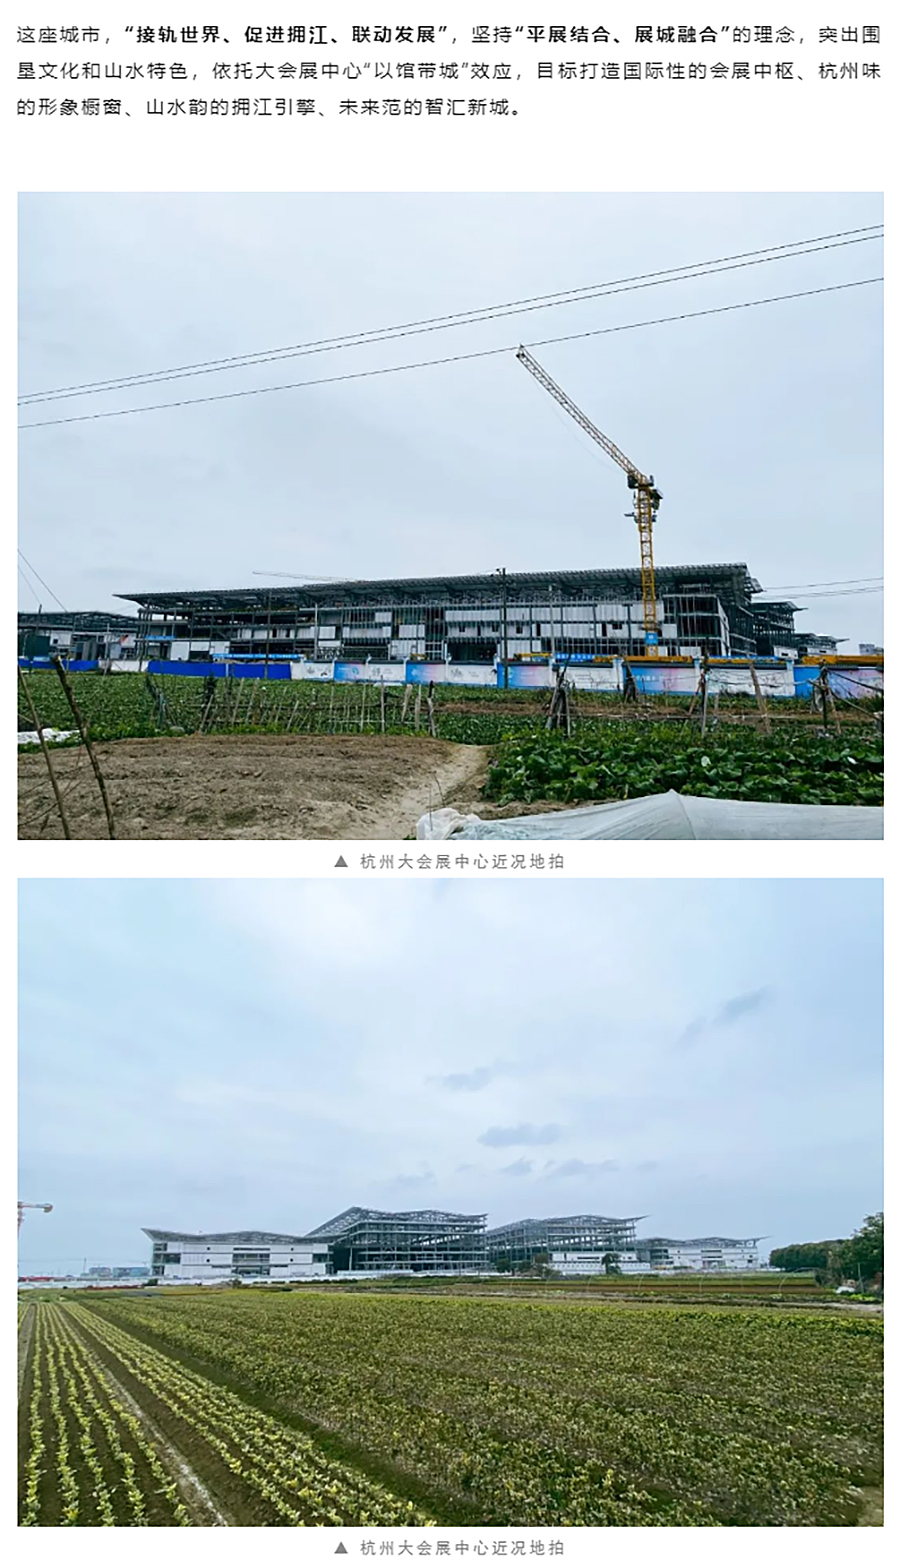 项目近况-_-杭州大会展中心一期展馆钢结构已全面结顶_0003_图层-4 拷贝.jpg